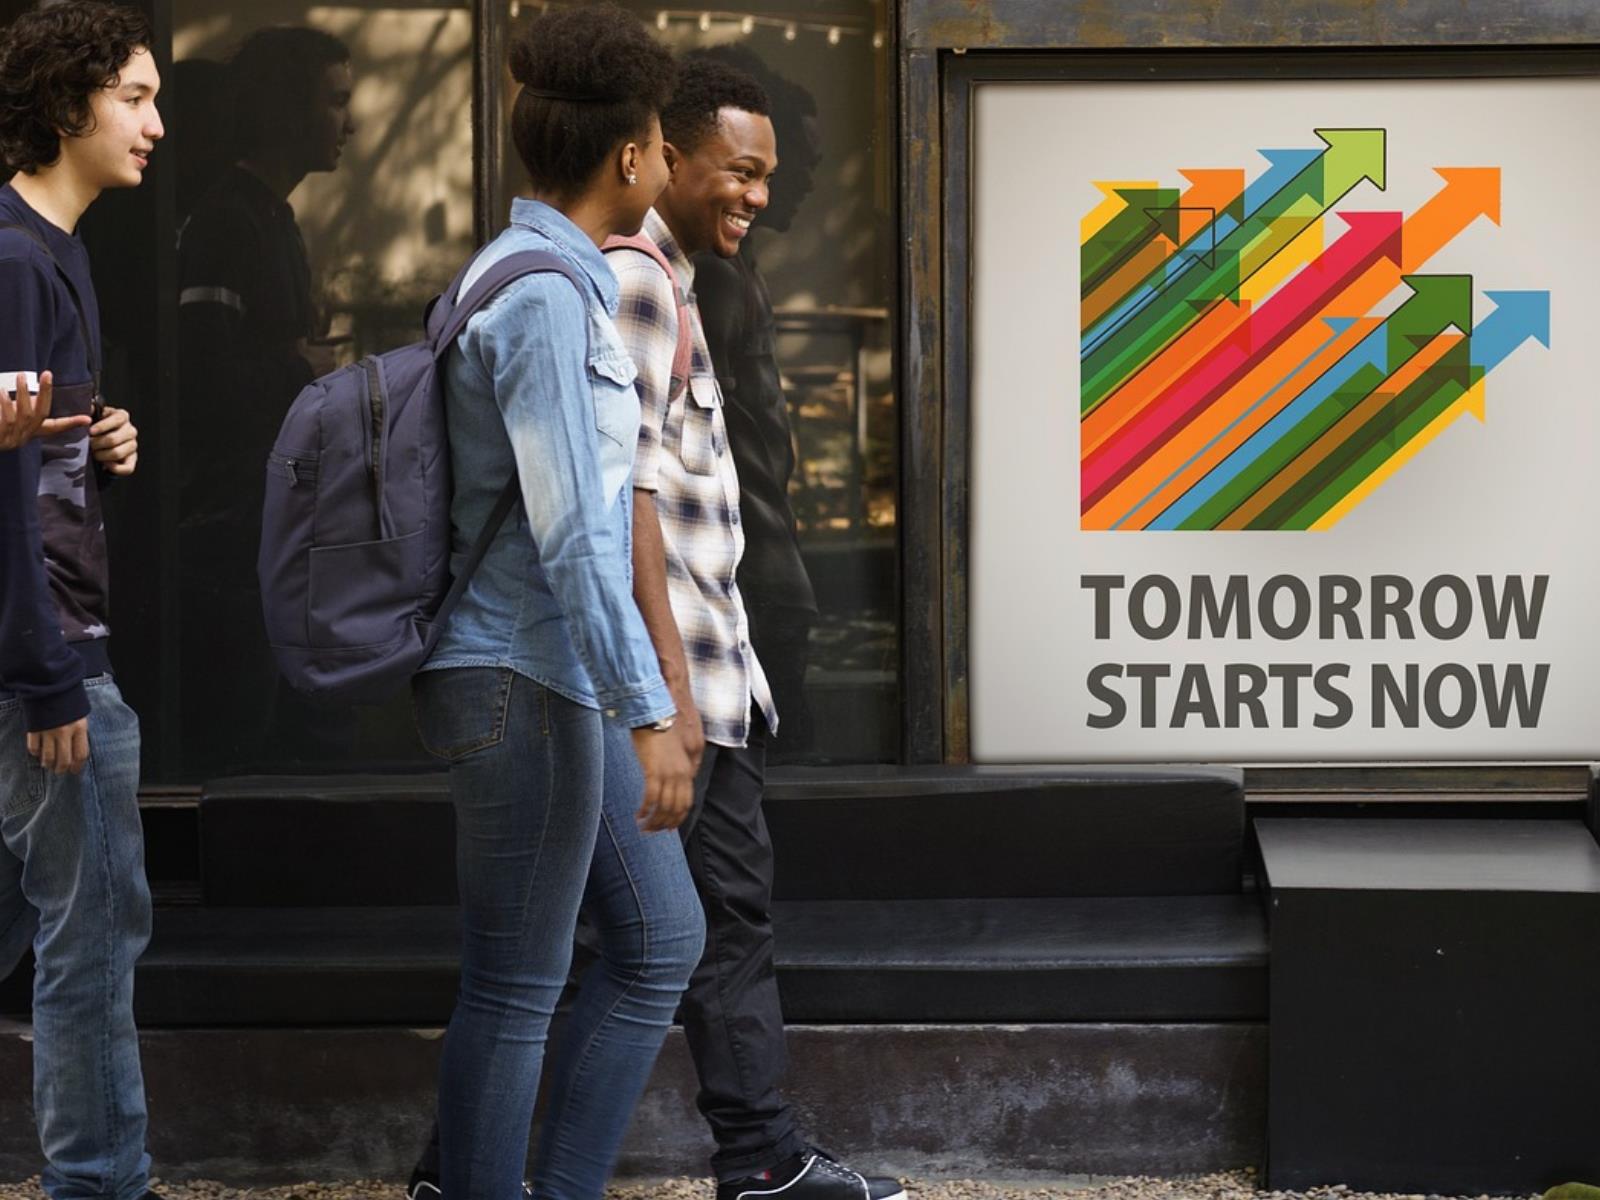 Junge Menschen vor Plakat mit der Aufschrift "Tomorrow starts now"